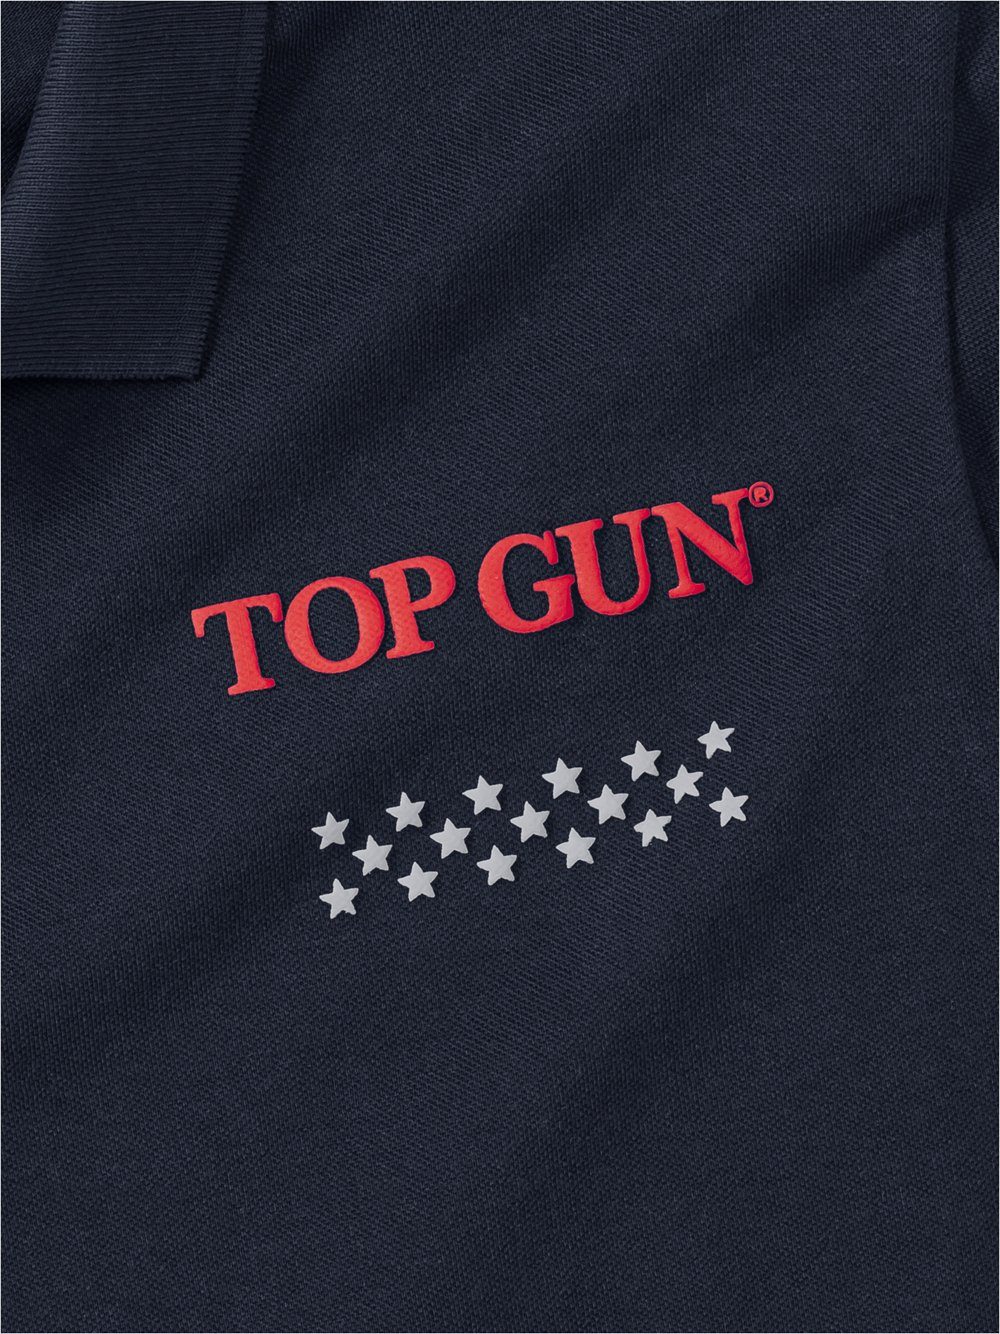 GUN marine Baumwolle reiner Poloshirt aus TOP